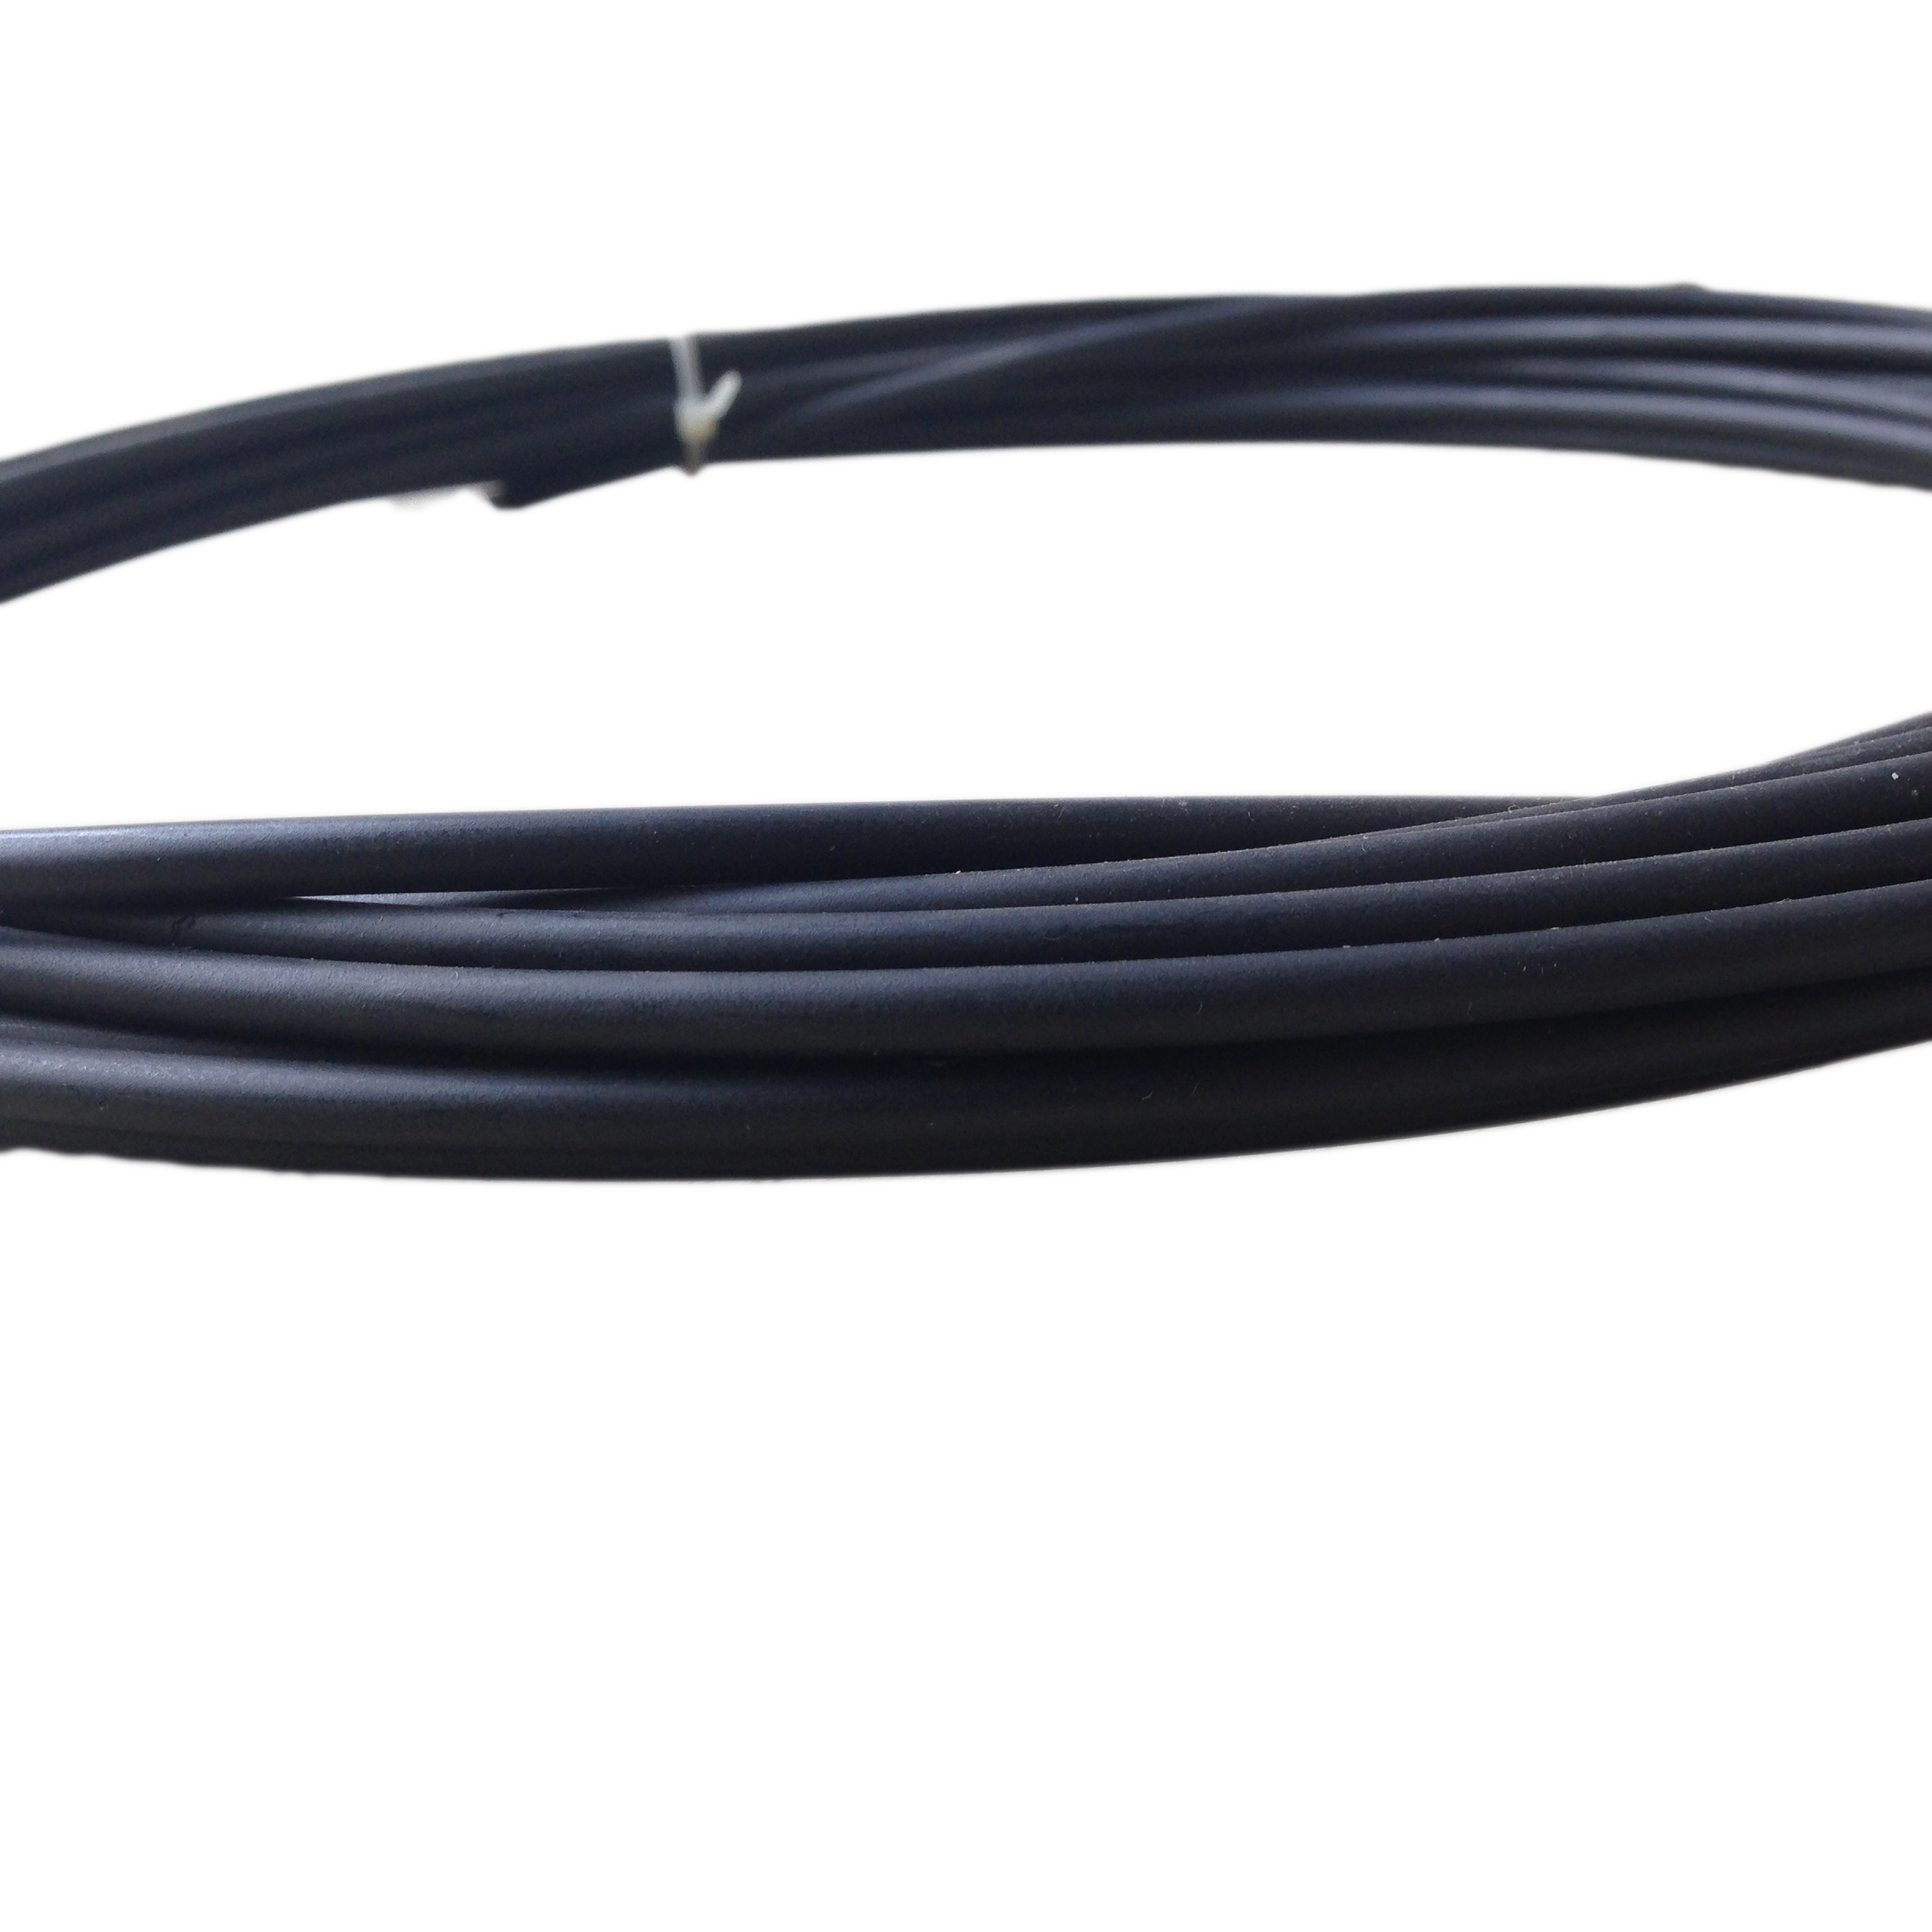 Cable exterior para cambios, cable Bowden en negro